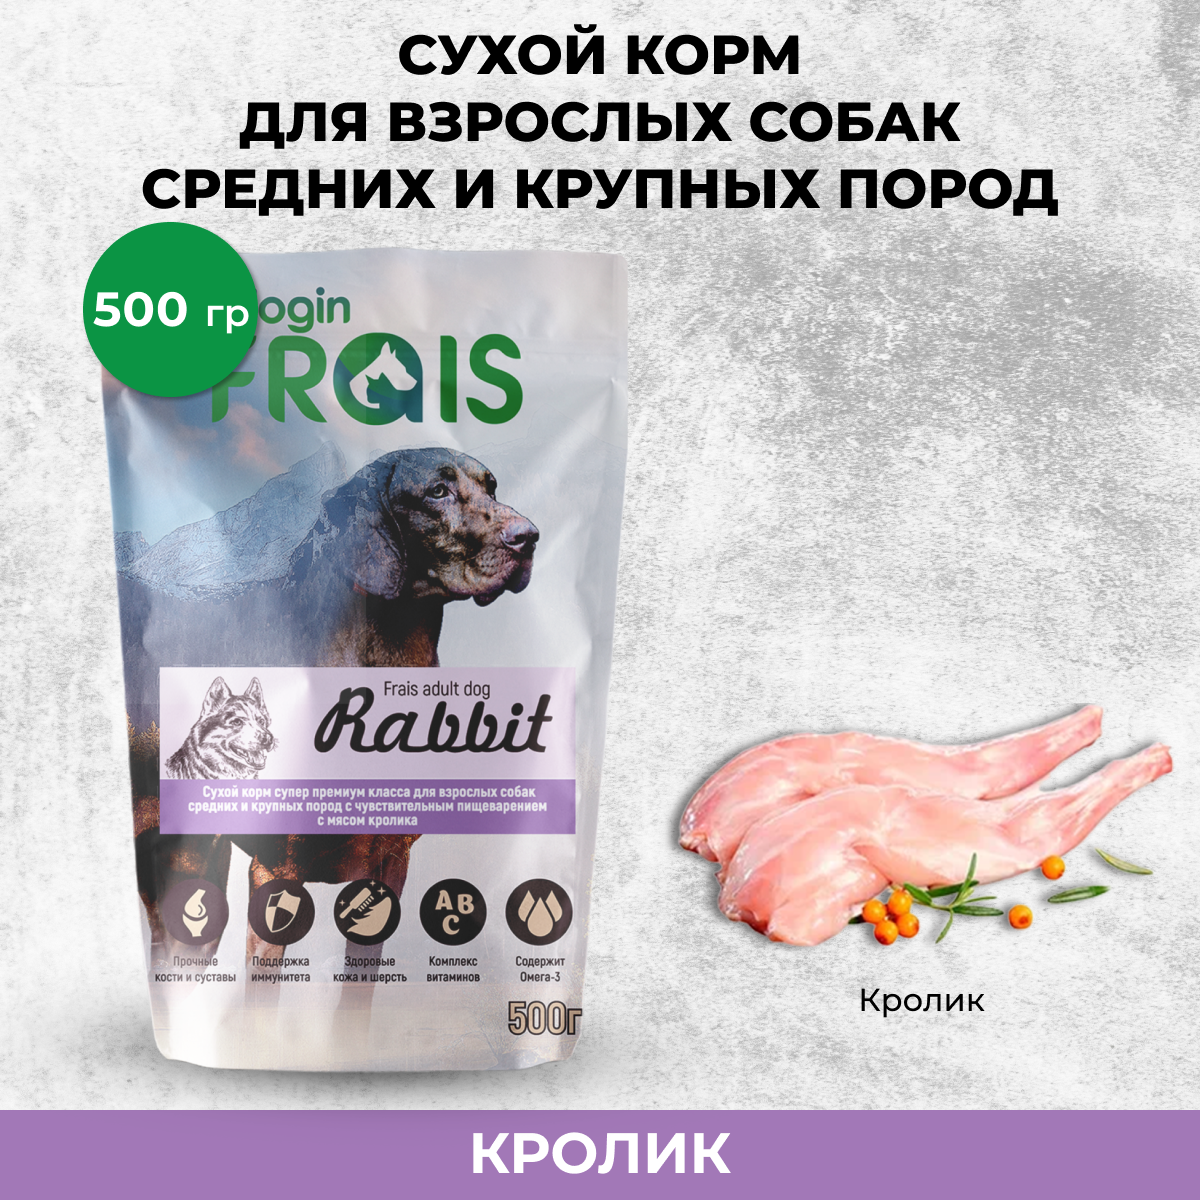 Сухой корм для собак FRAIS ADULT DOG RABBIT, кролик, 0,5 кг